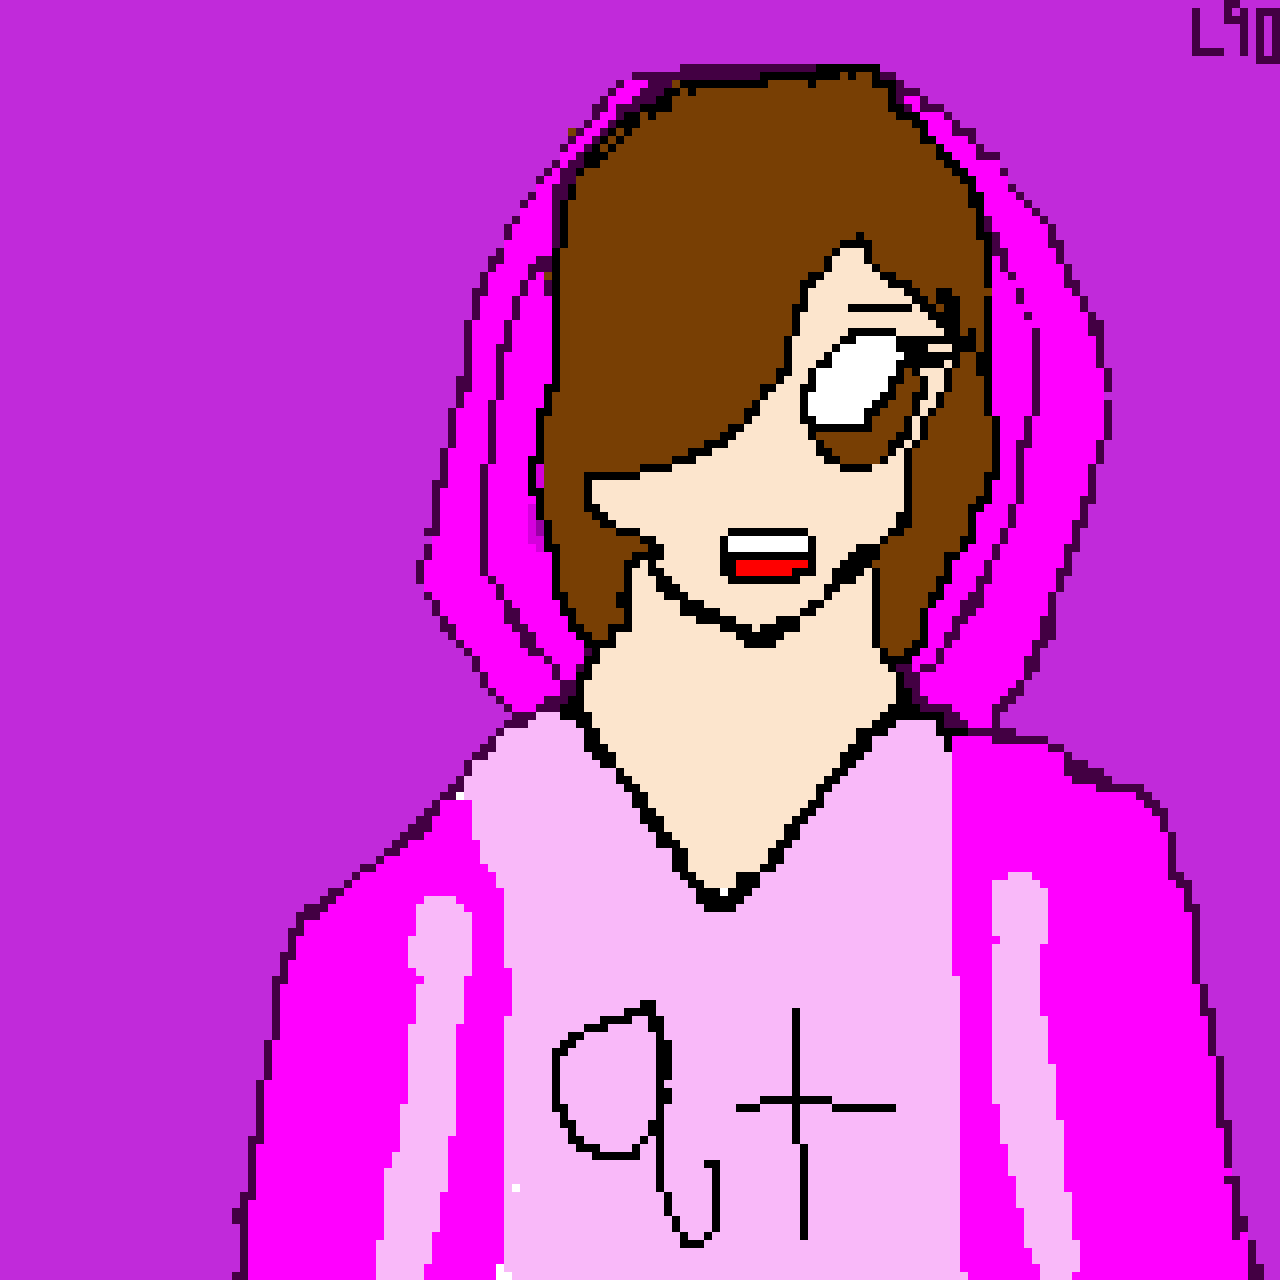 me in a pink hoodie(me irl)